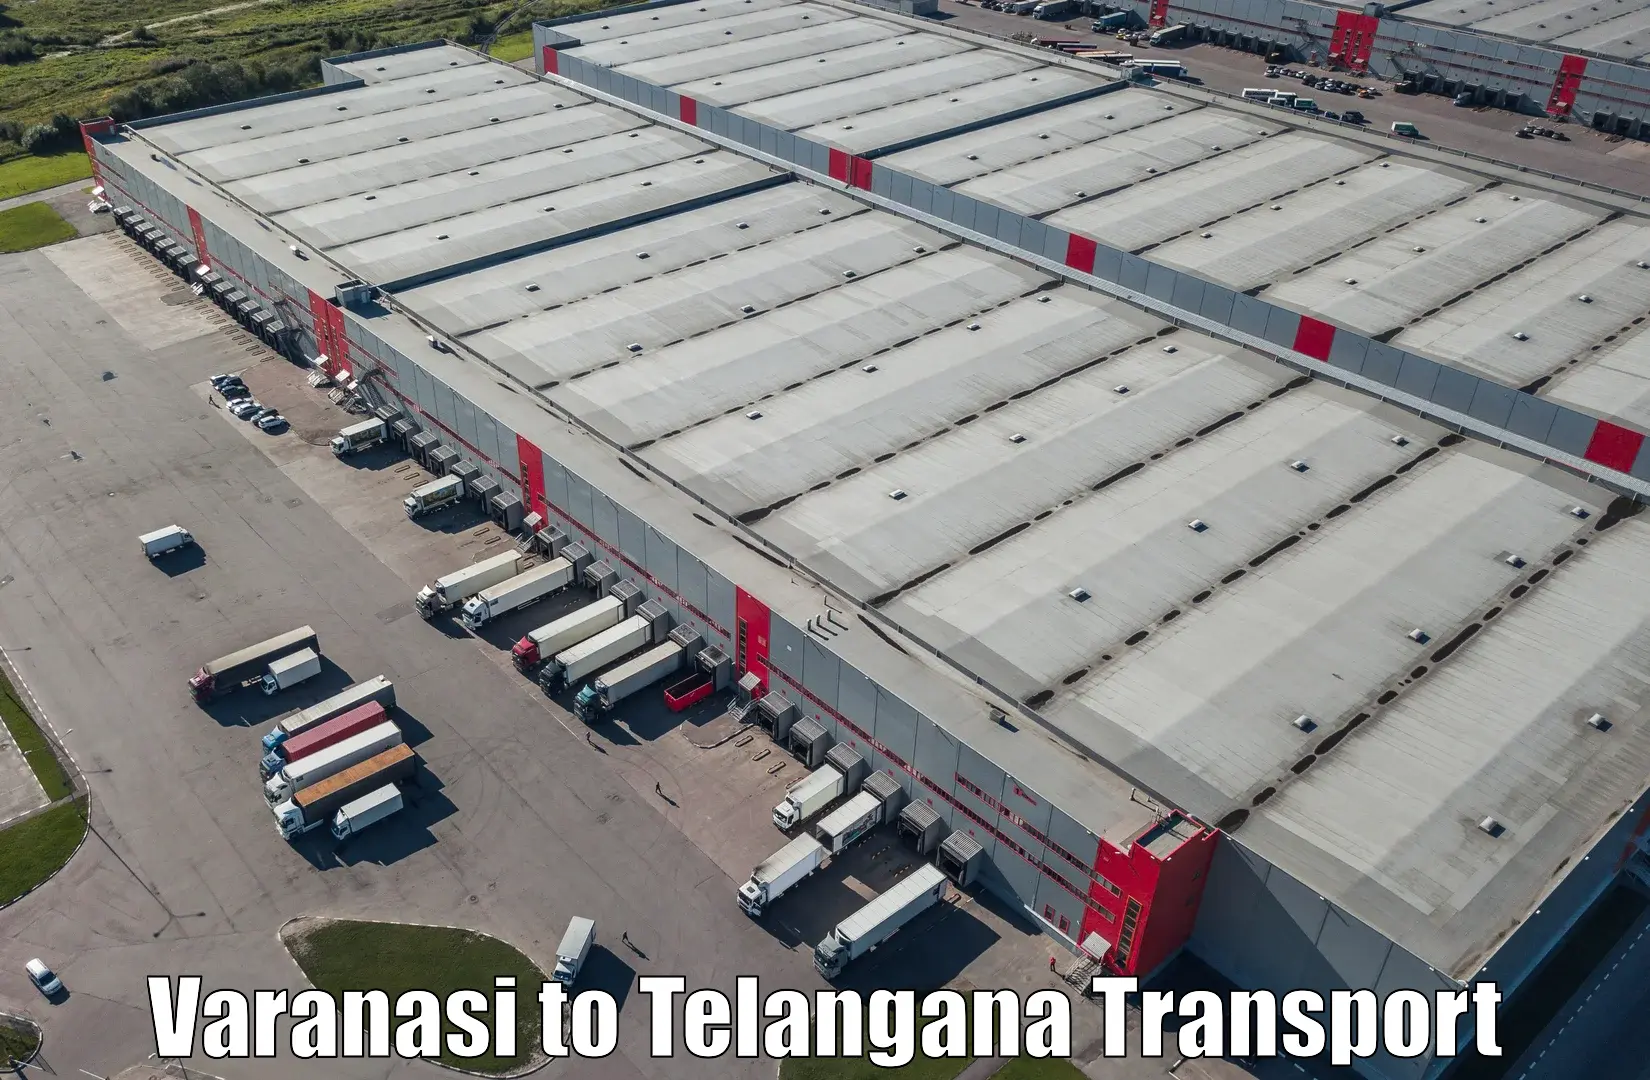 Transport in sharing Varanasi to Mahabubnagar